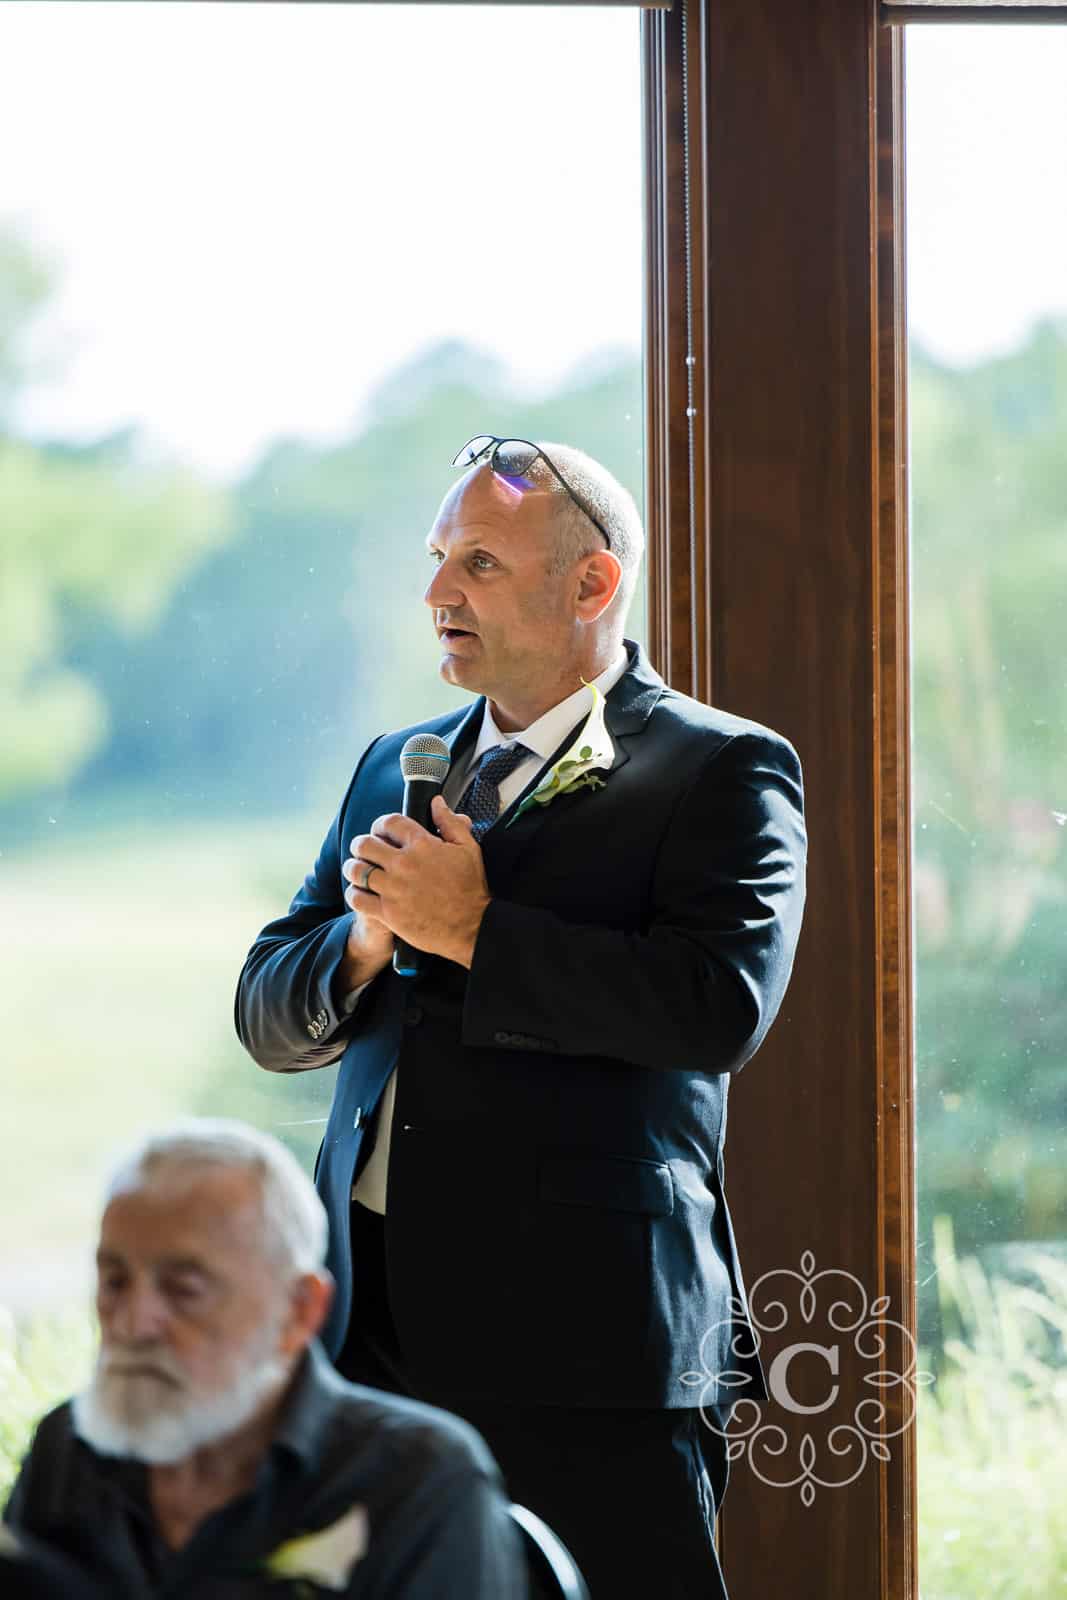 Troy Burne Golf Club Wedding Photos